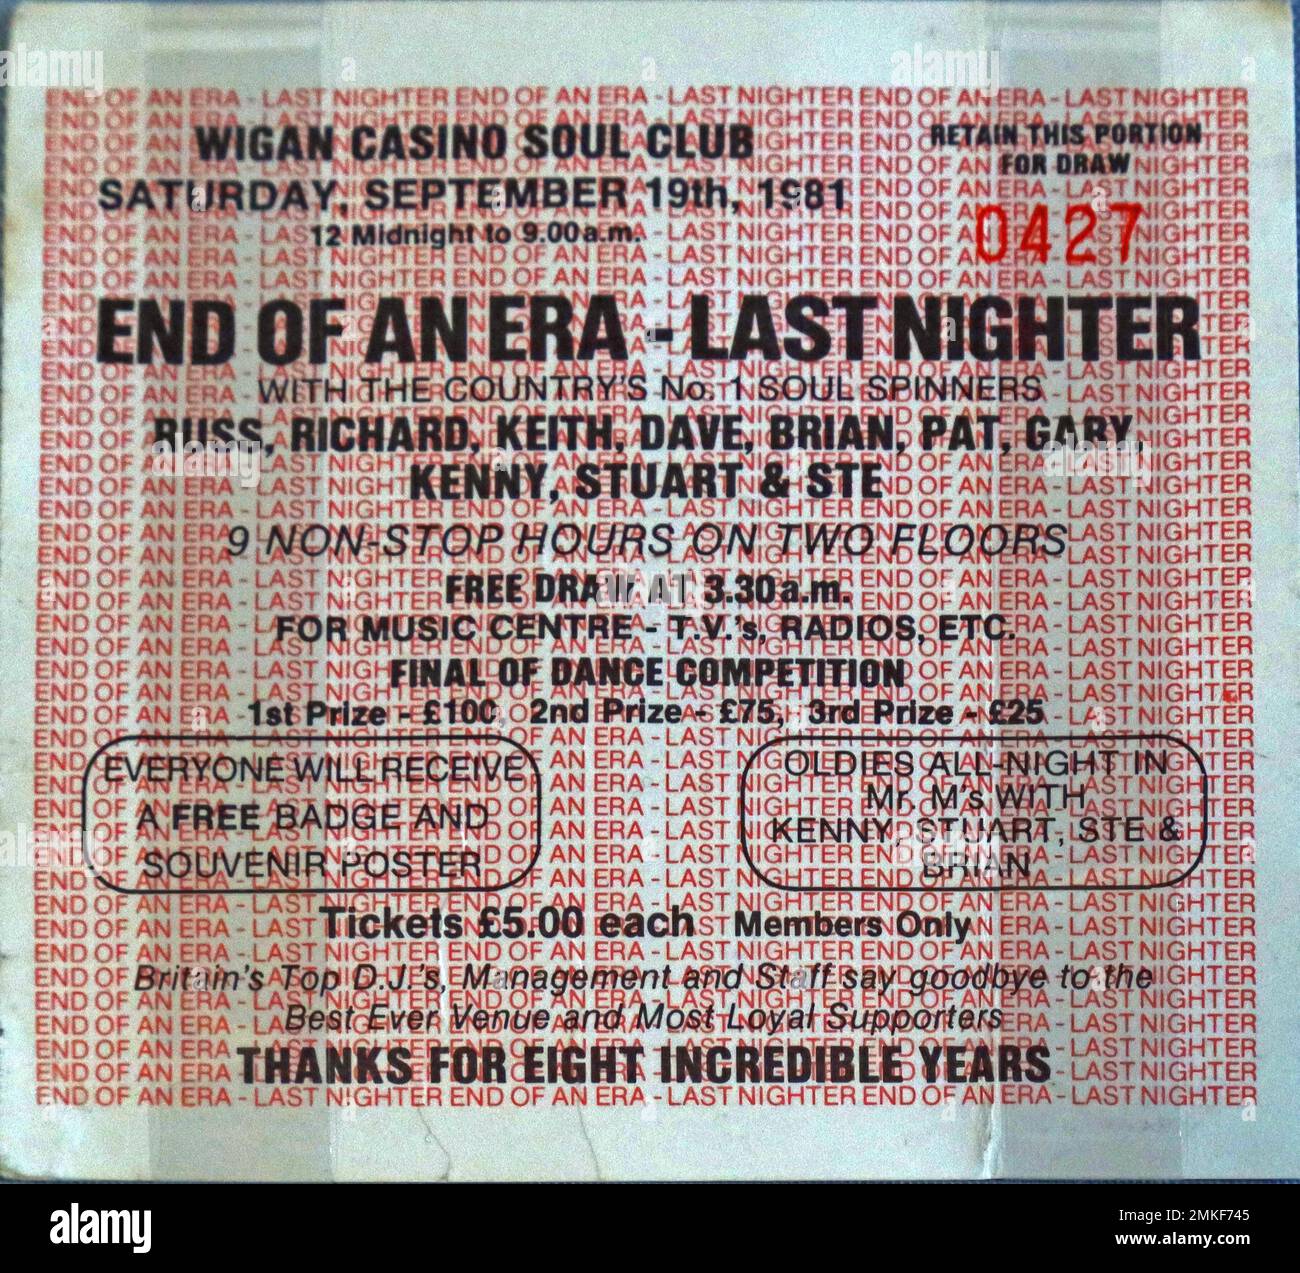 Wigan Casino Soul Club Ticket, allnight mit Russ, Richard, Keith, Dave und Brian, Kostenloses Unentschieden um 3:30am Uhr – Ende einer Ära – letzte Nacht Stockfoto